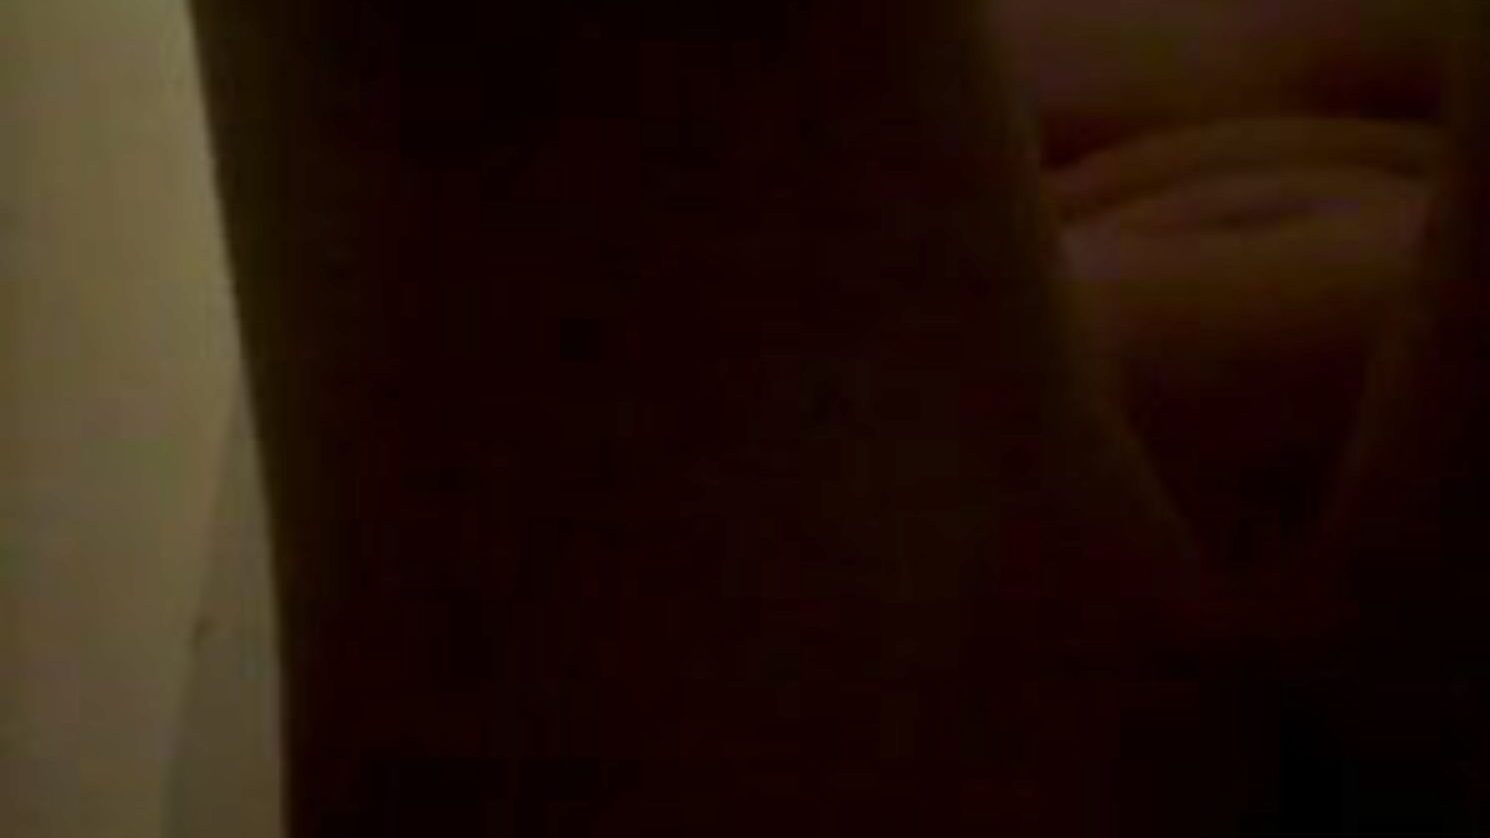 piss et frotte sur le corps, free pee porn 45: xhamster xhamster'da piss et frotte sur le corps klibini izle, tonlarca ücretsiz işeme işeme ve ev yapımı porno film sahneleri içeren en şişman orgy tube sitesi